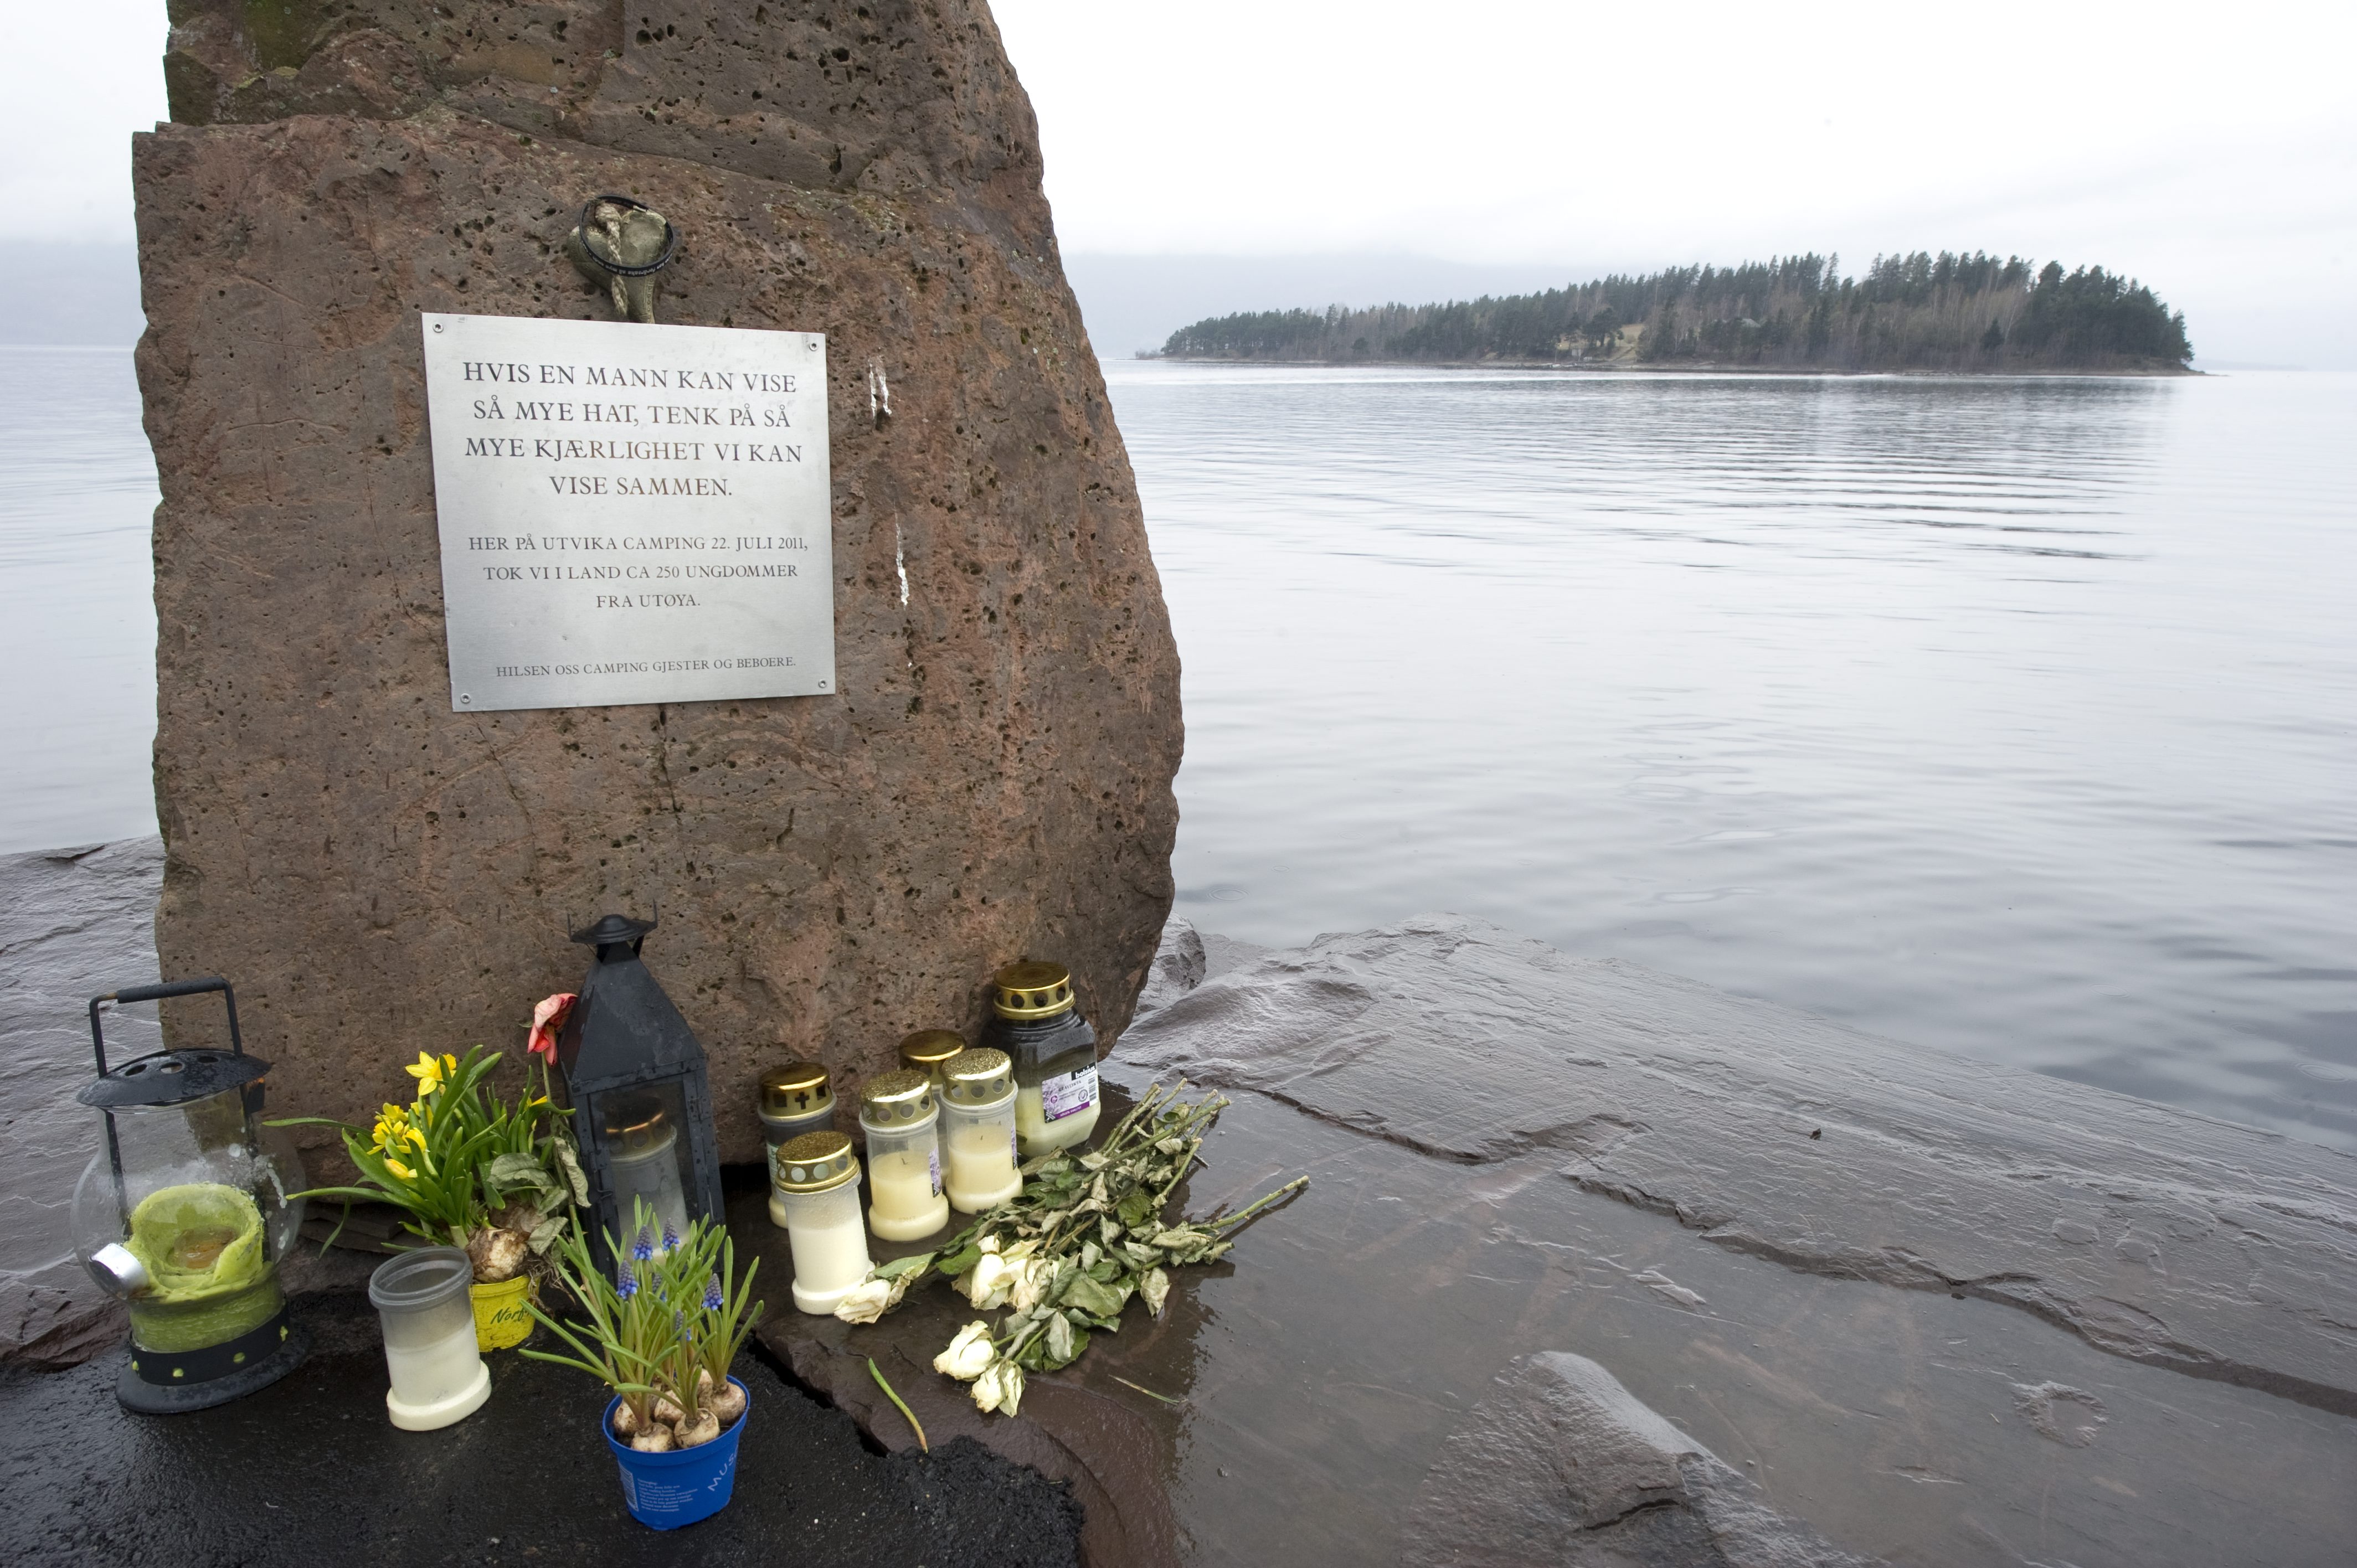 Anders Behring Breivik, Terrordåd, Oslo, Utøya, Vittnesmål, Skottlossning, Massmördare, Norge, Rättegång